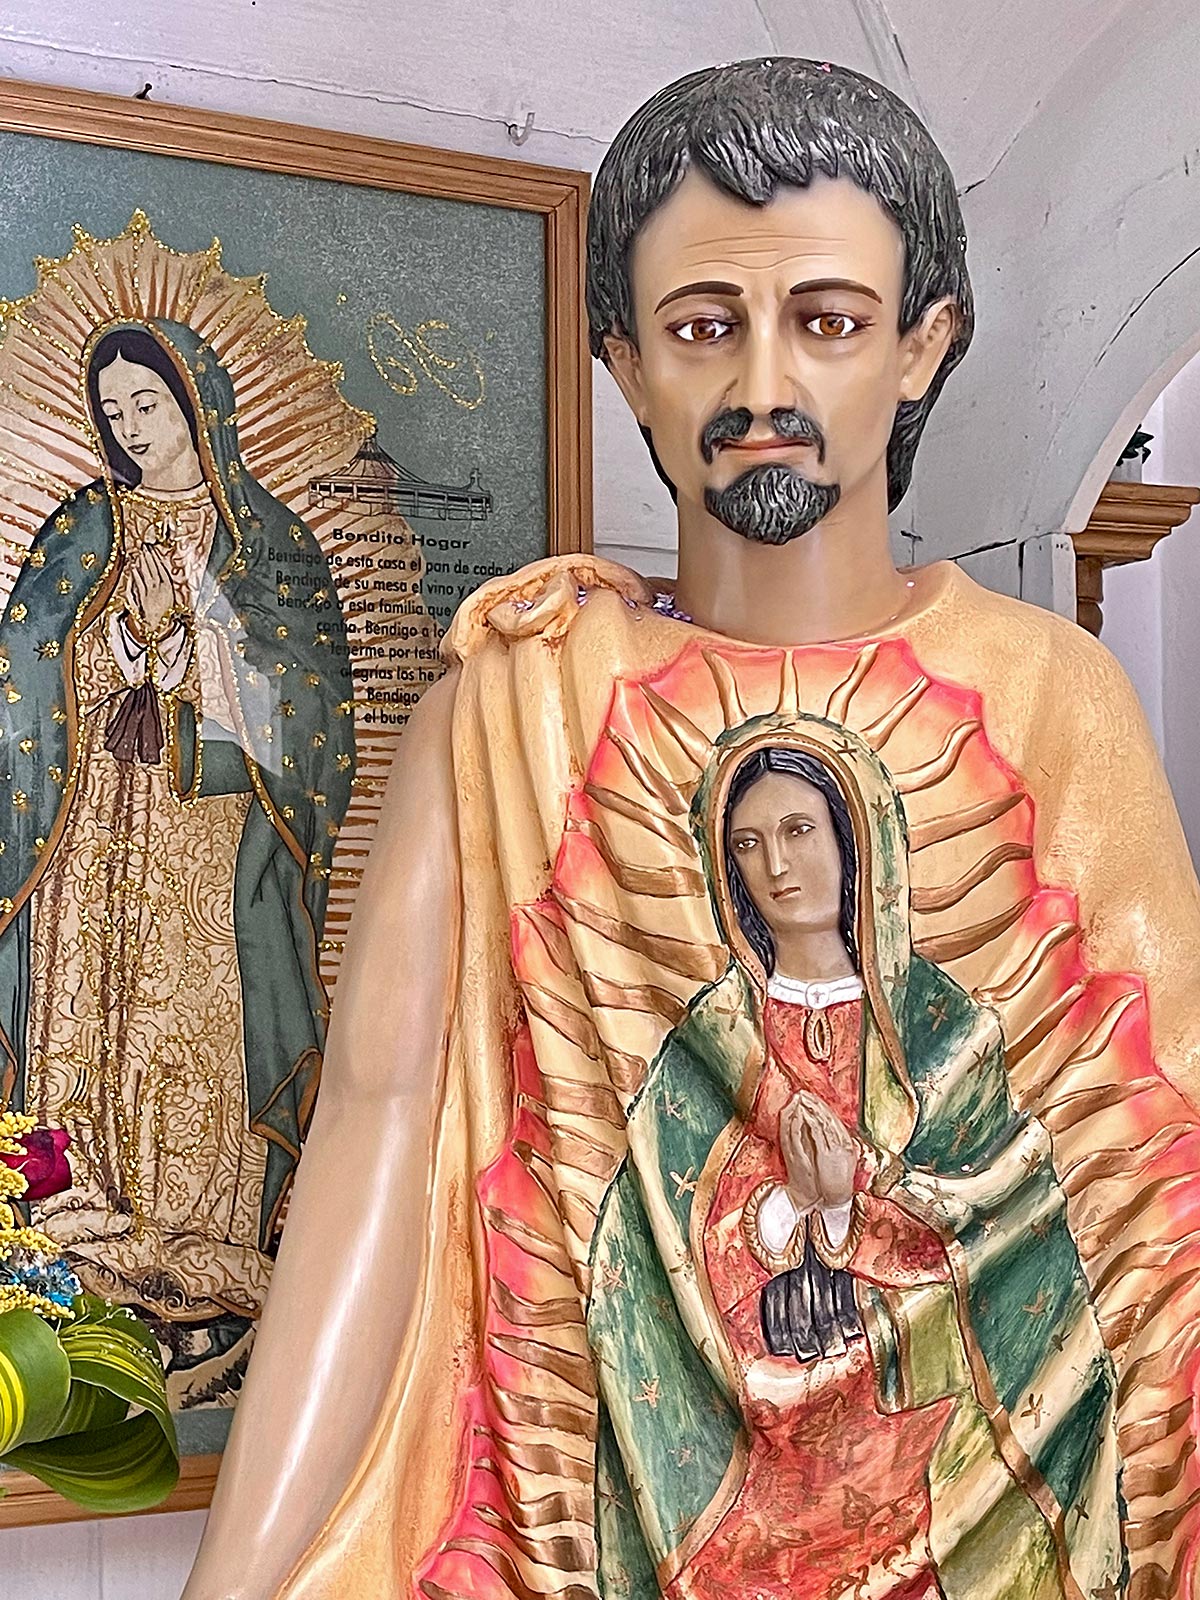 Staty av Juan Diego med mirakulös bild av Maria präglad på hans tygkappa, Church of Guadalupe, San Cristobal